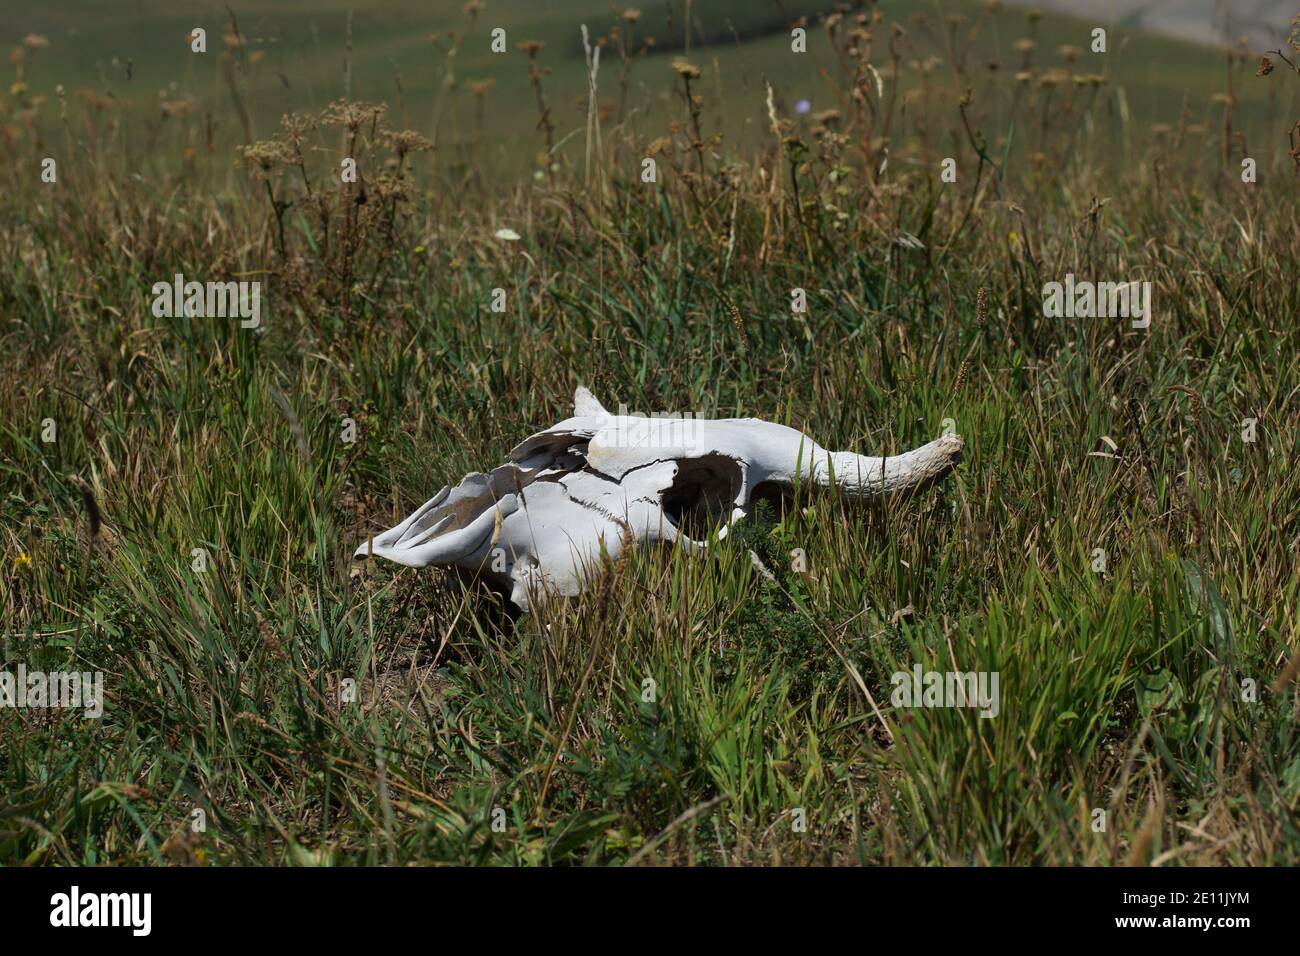 Le crâne d'une vache repose sur l'herbe dans le pré. Vache de bétail Banque D'Images